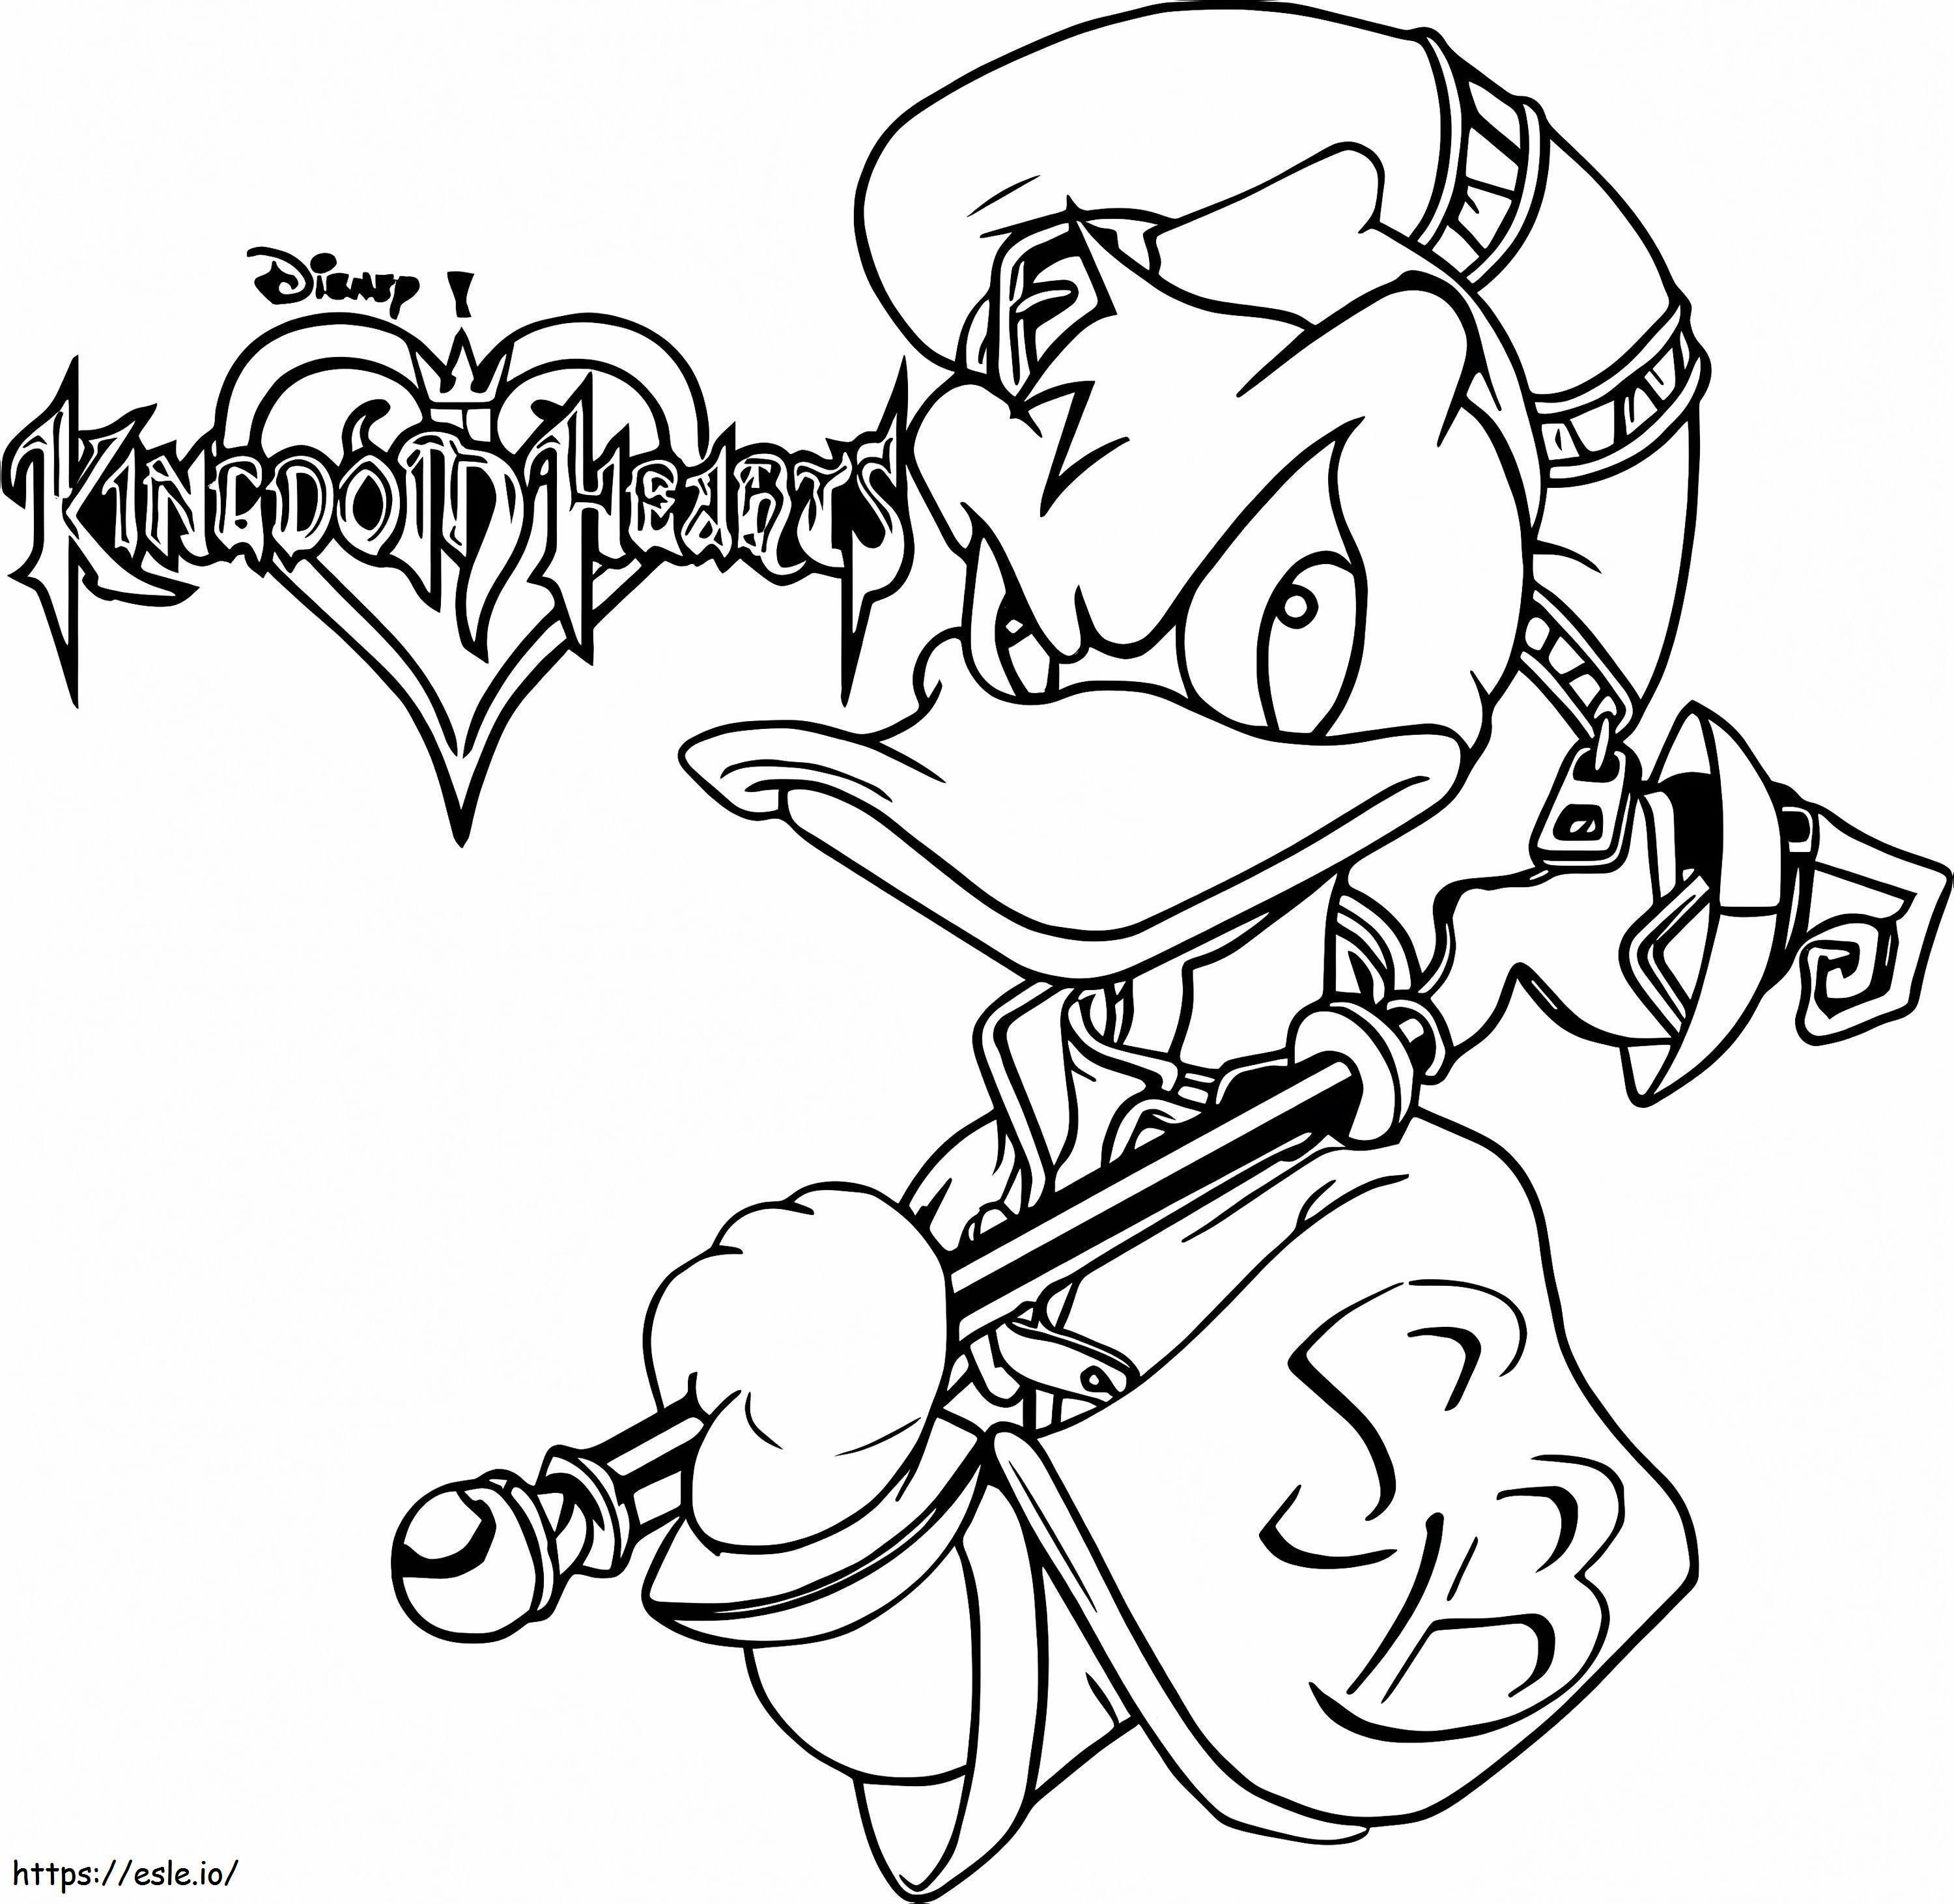 Donlad Duck di Kingdom Hearts da colorare